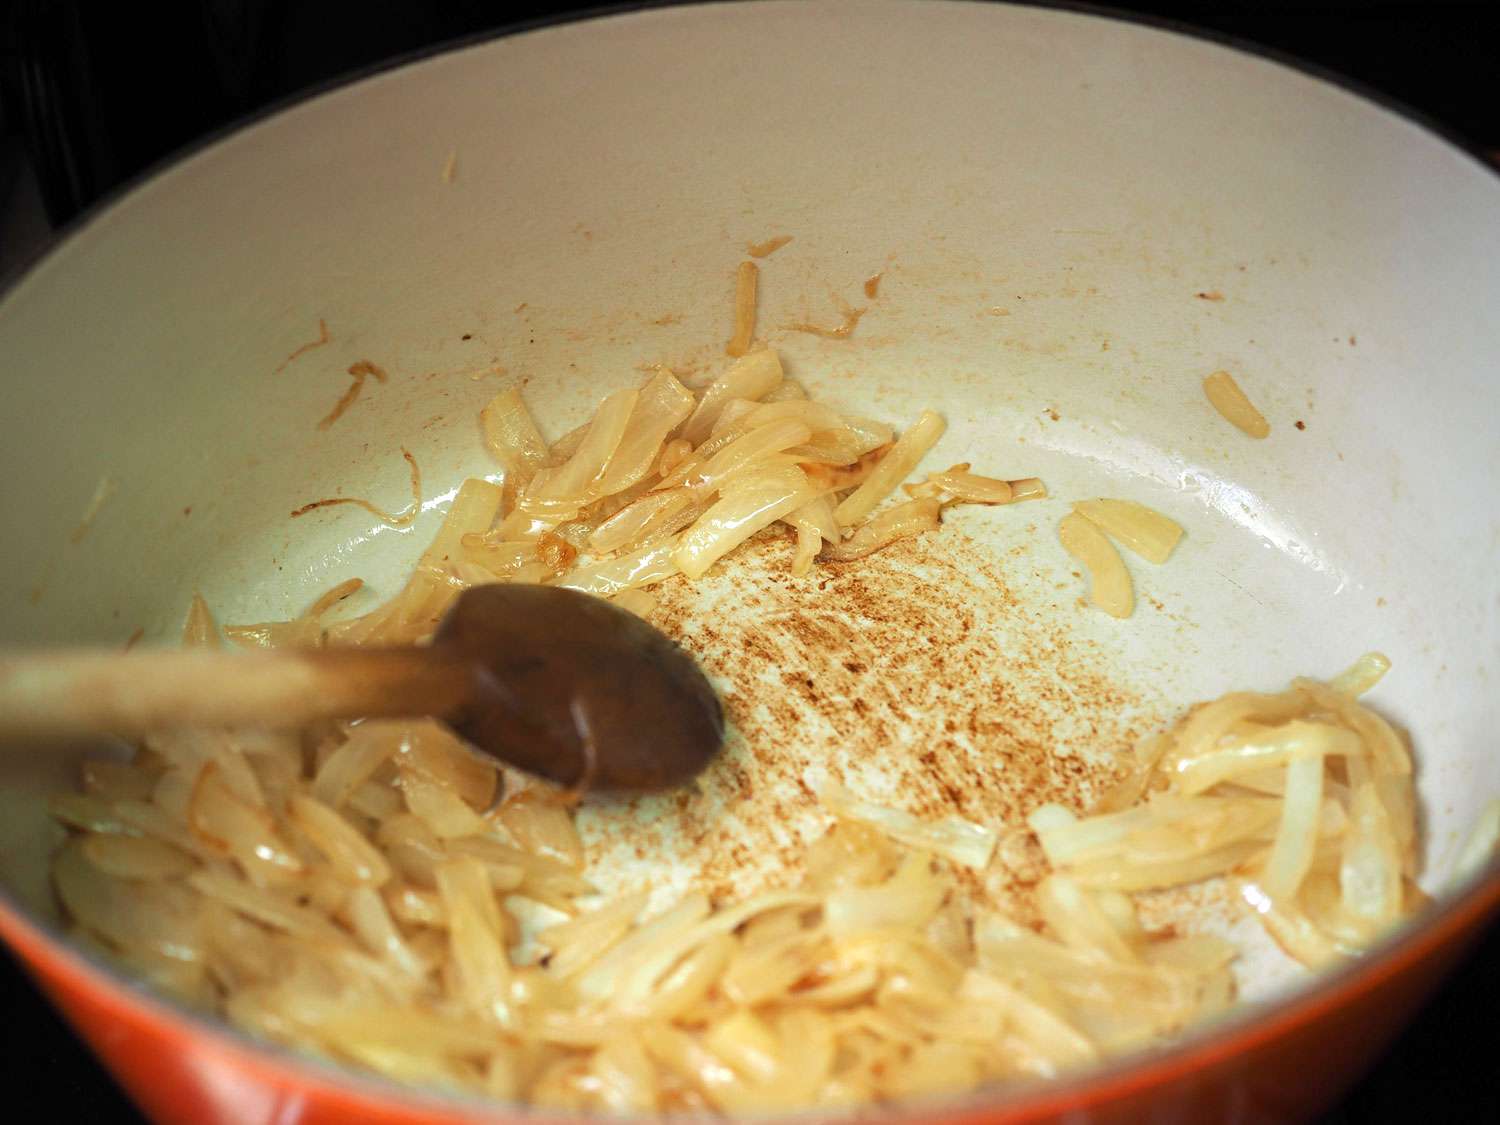 洋葱片在搪瓷铸铁锅中被焦糖化。gydF4y2Ba